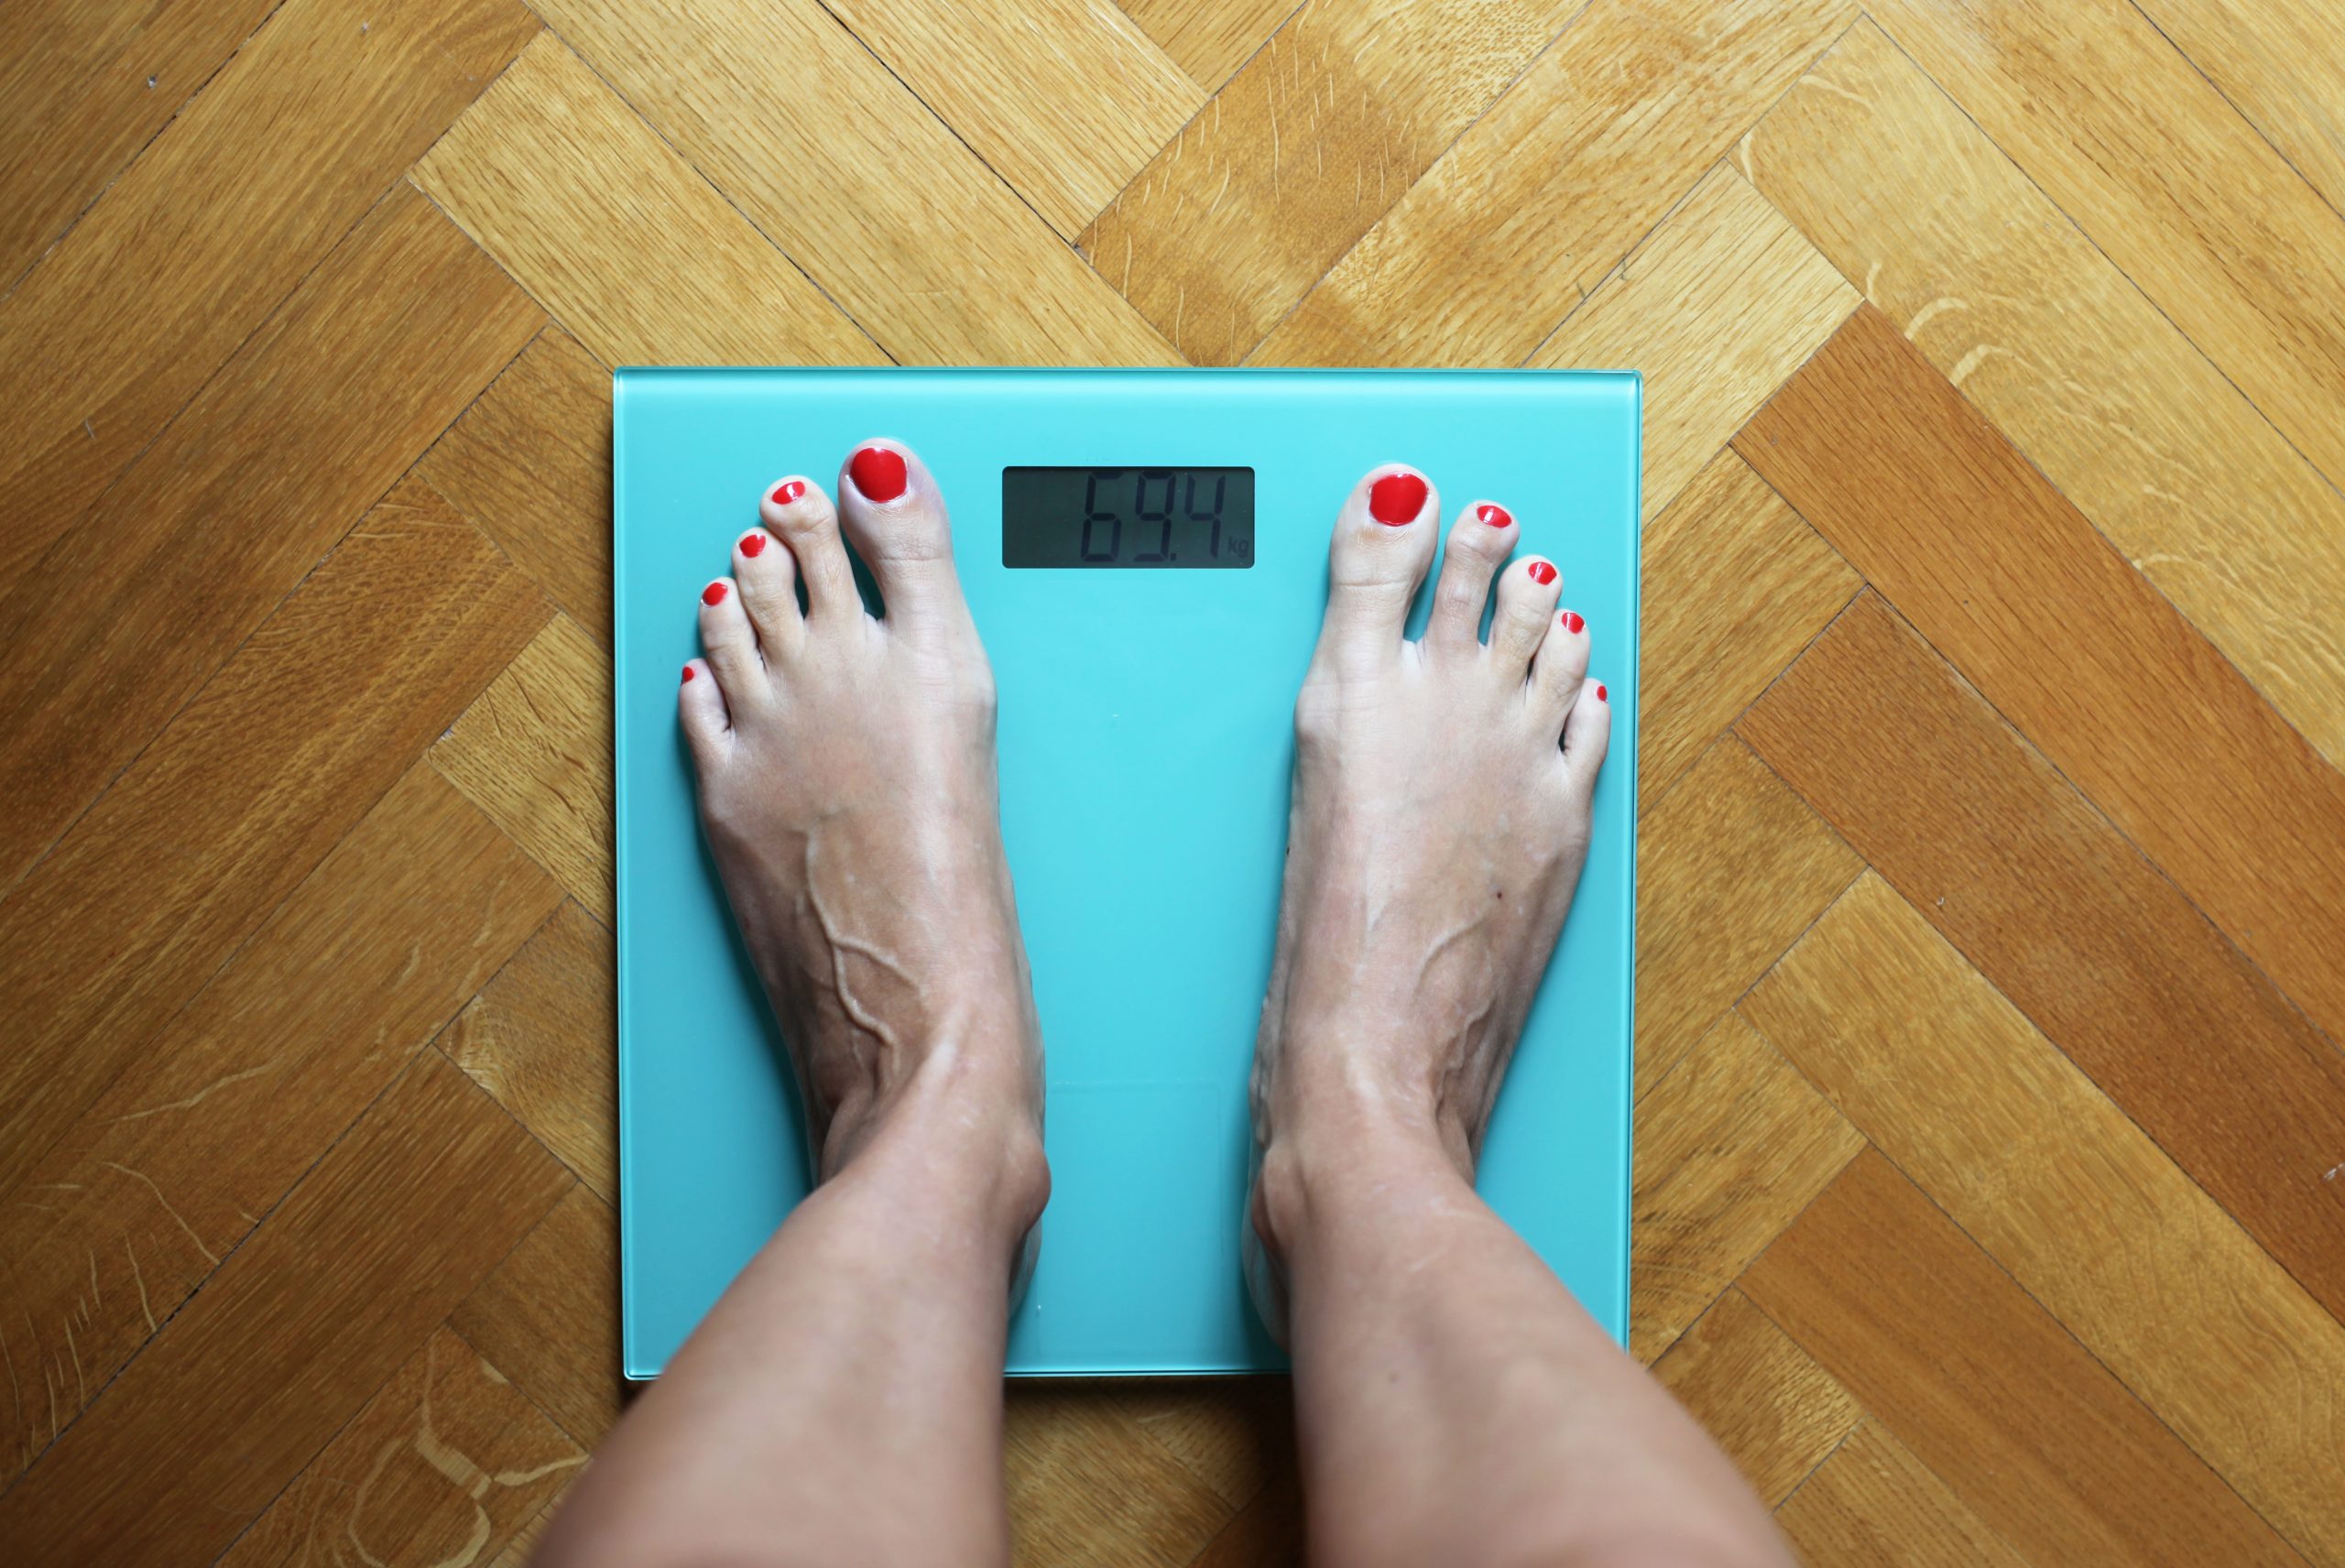 هل يسبب انقطاع الطمث زيادة الوزن - زيادة وزن النساء بعد انقطاع الطمث - دورة الحياة الإنجابية للأنثى - الهبات الساخنة وعدم تحمل الحرارة